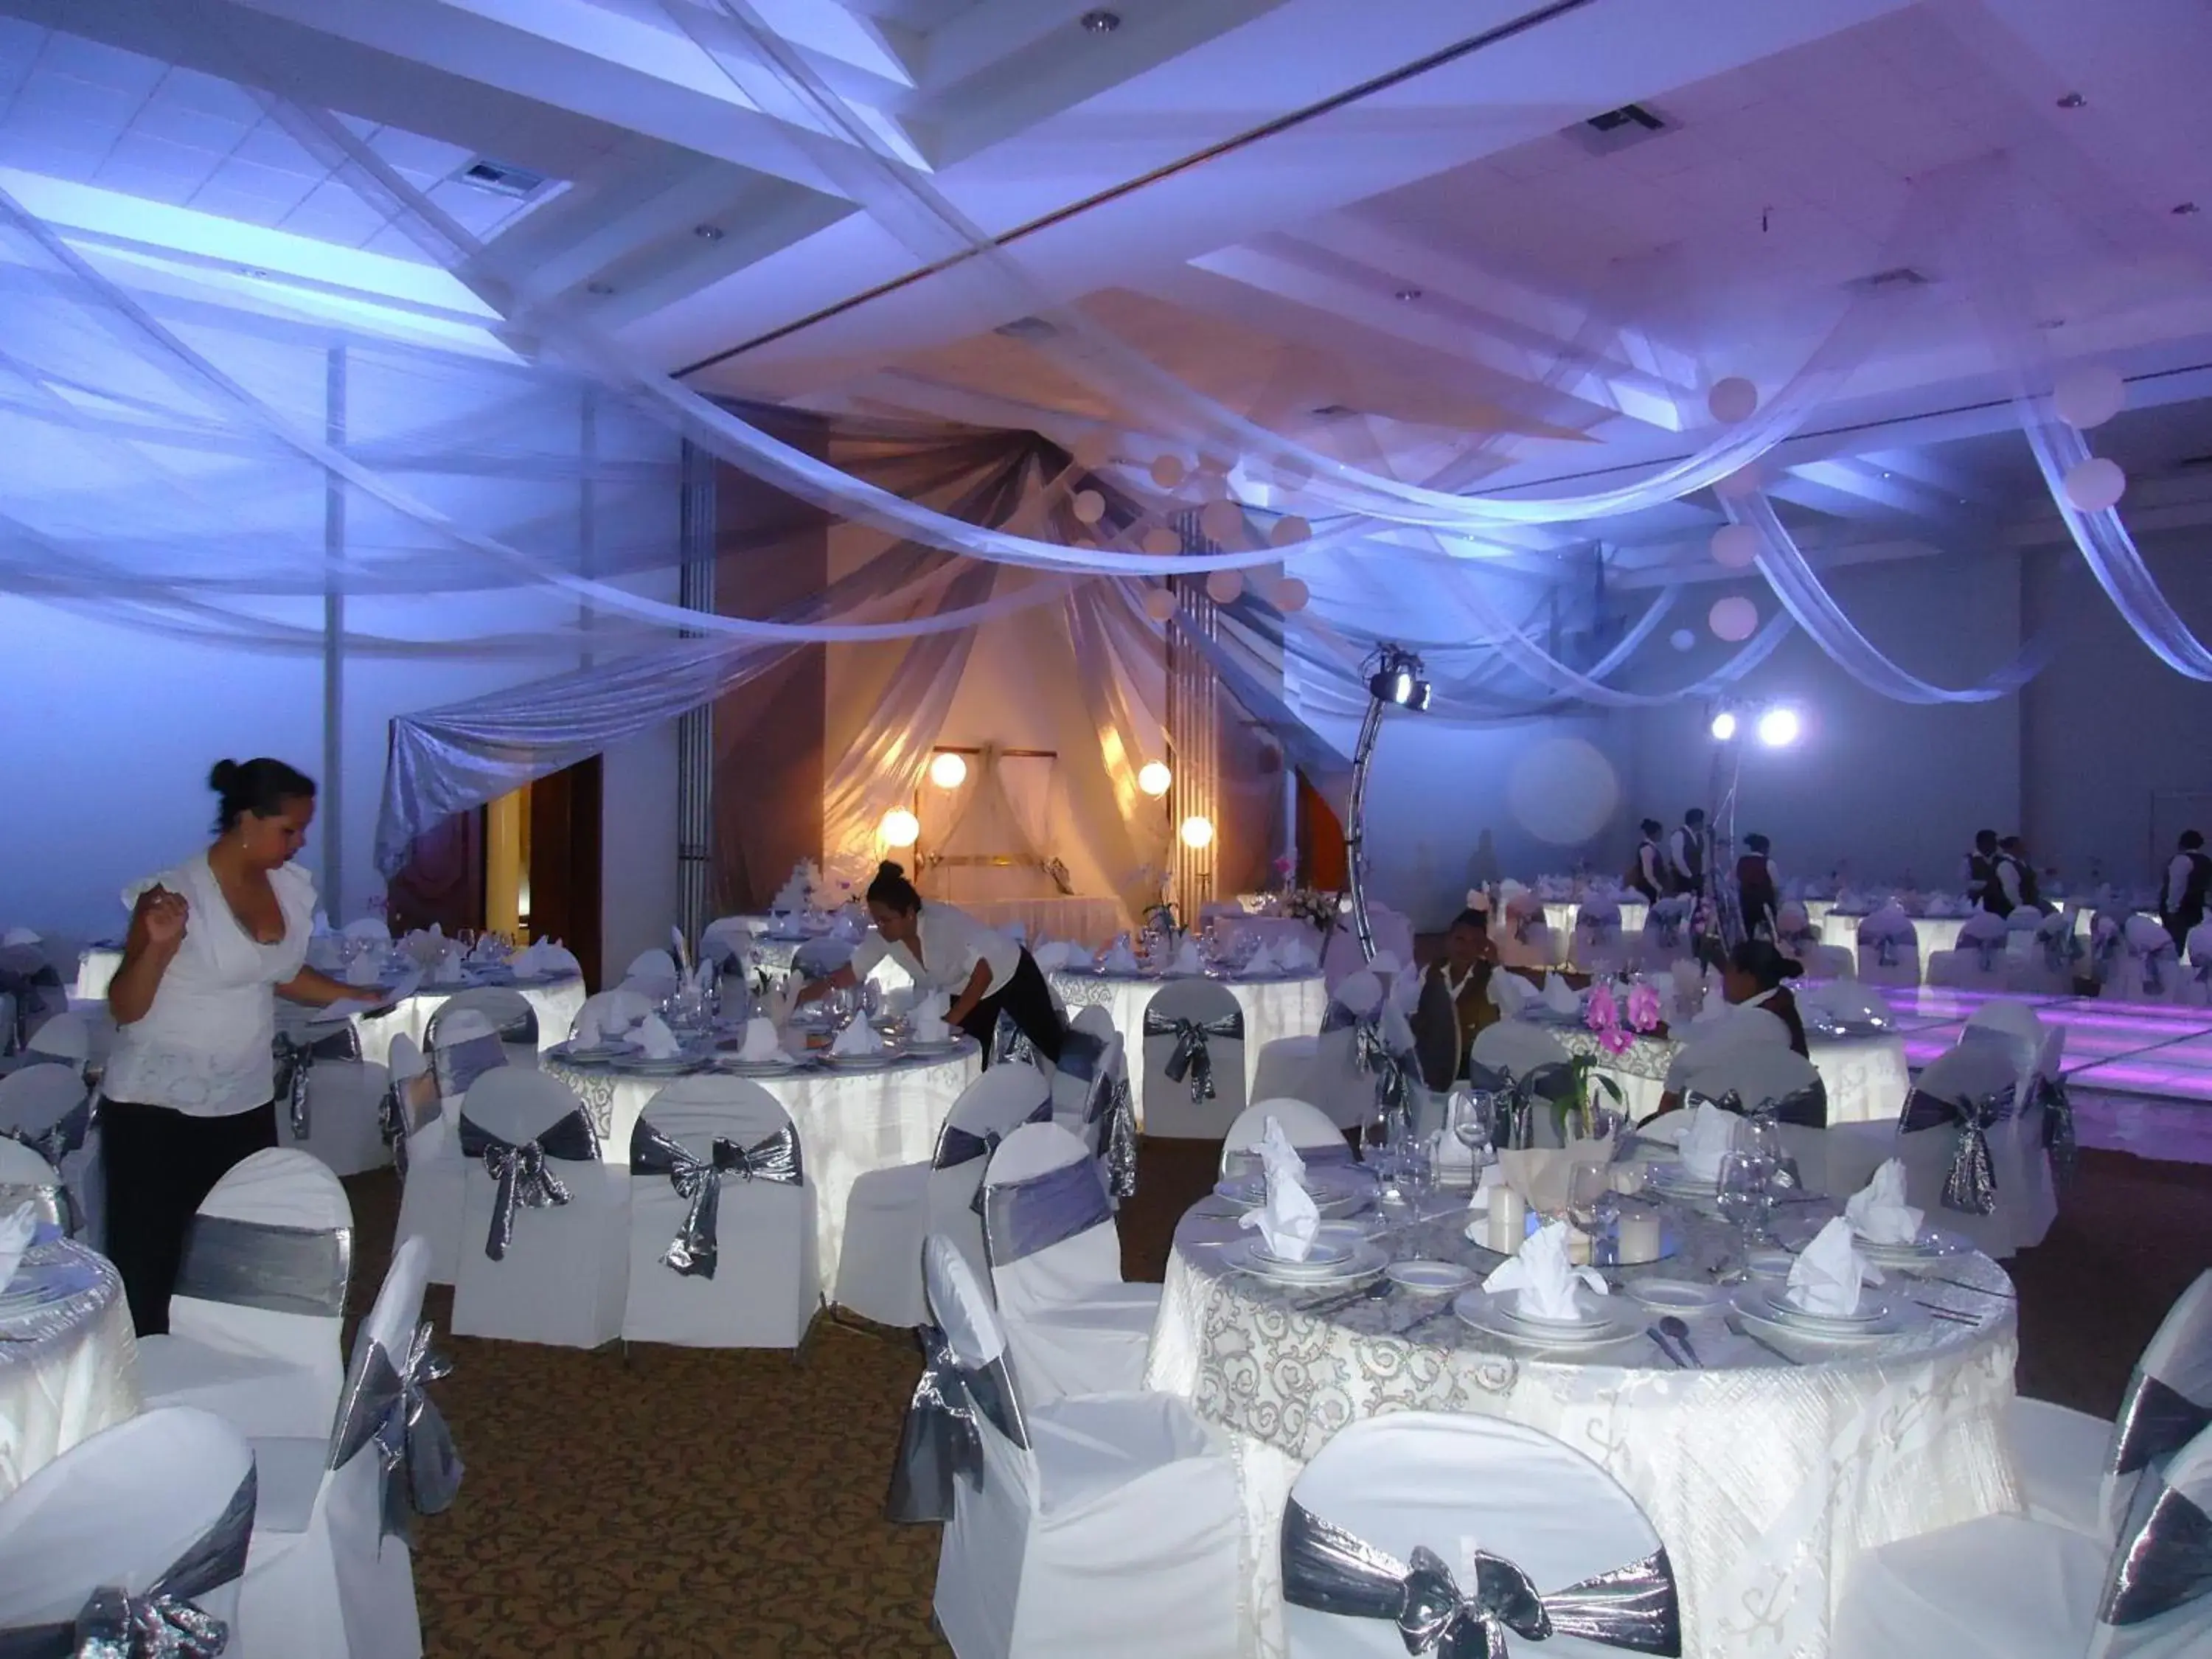 Banquet/Function facilities, Banquet Facilities in Hotel Marbella